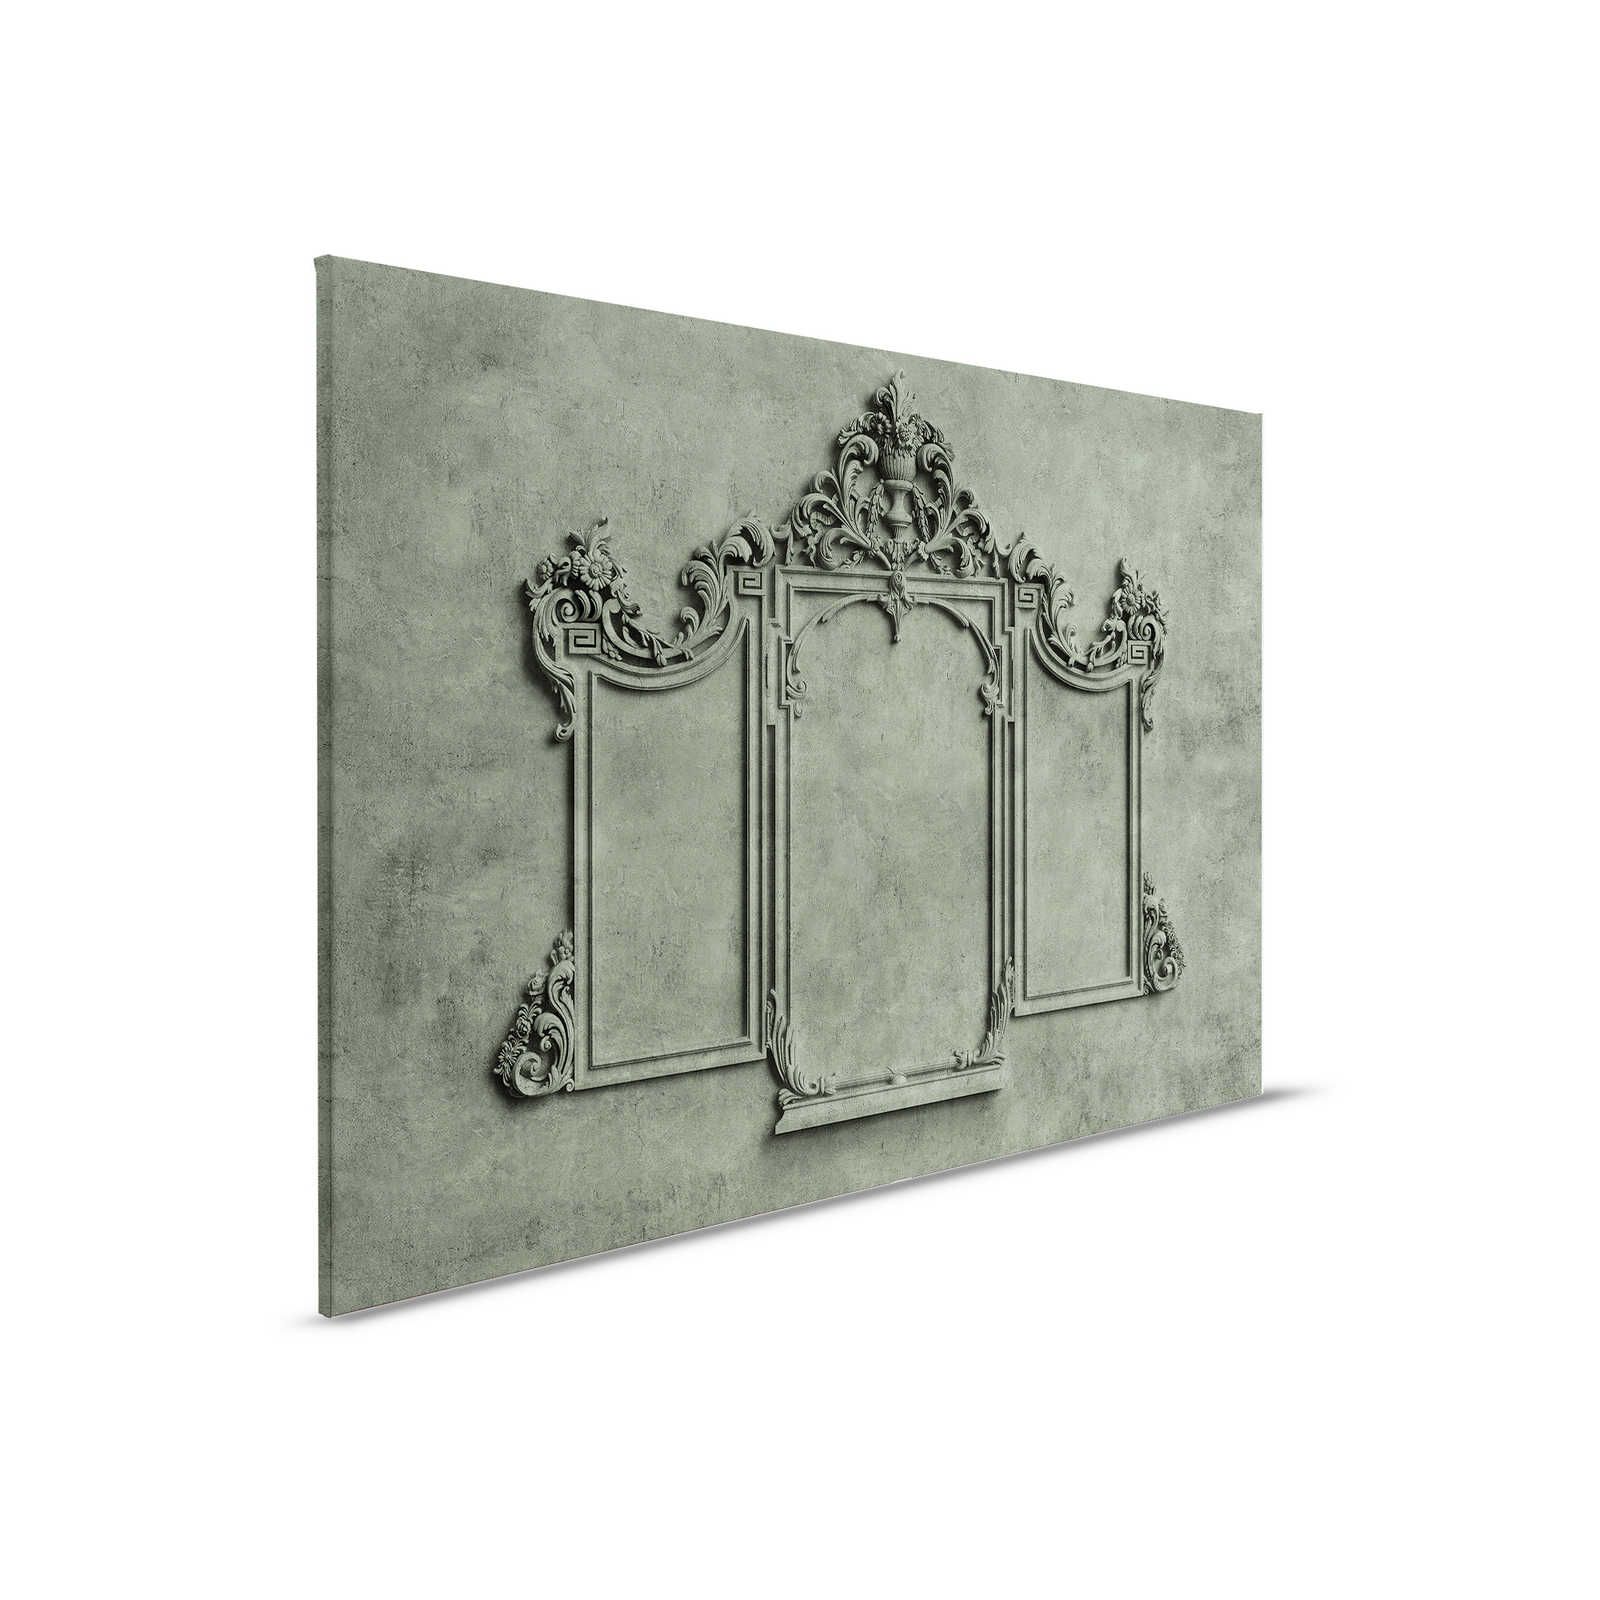 Lyon 2 - Toile 3D cadre stuc & aspect plâtre vert - 0,90 m x 0,60 m
